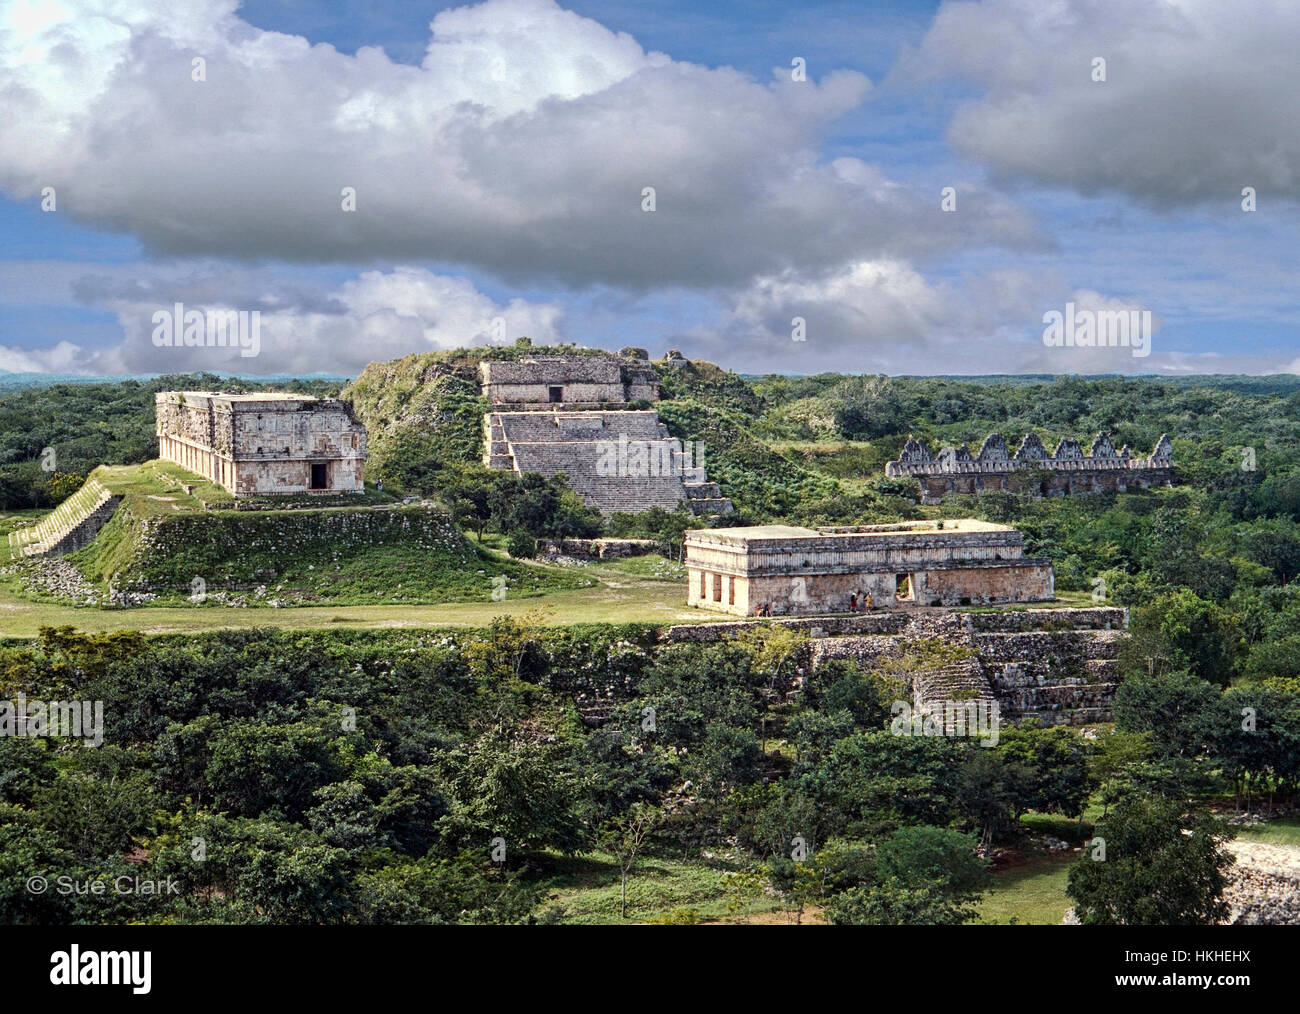 Questa è una sezione delle rovine maya di Uxmal Yucatan Messico. Il palazzo del governatore è visibile sulla sinistra. Foto Stock